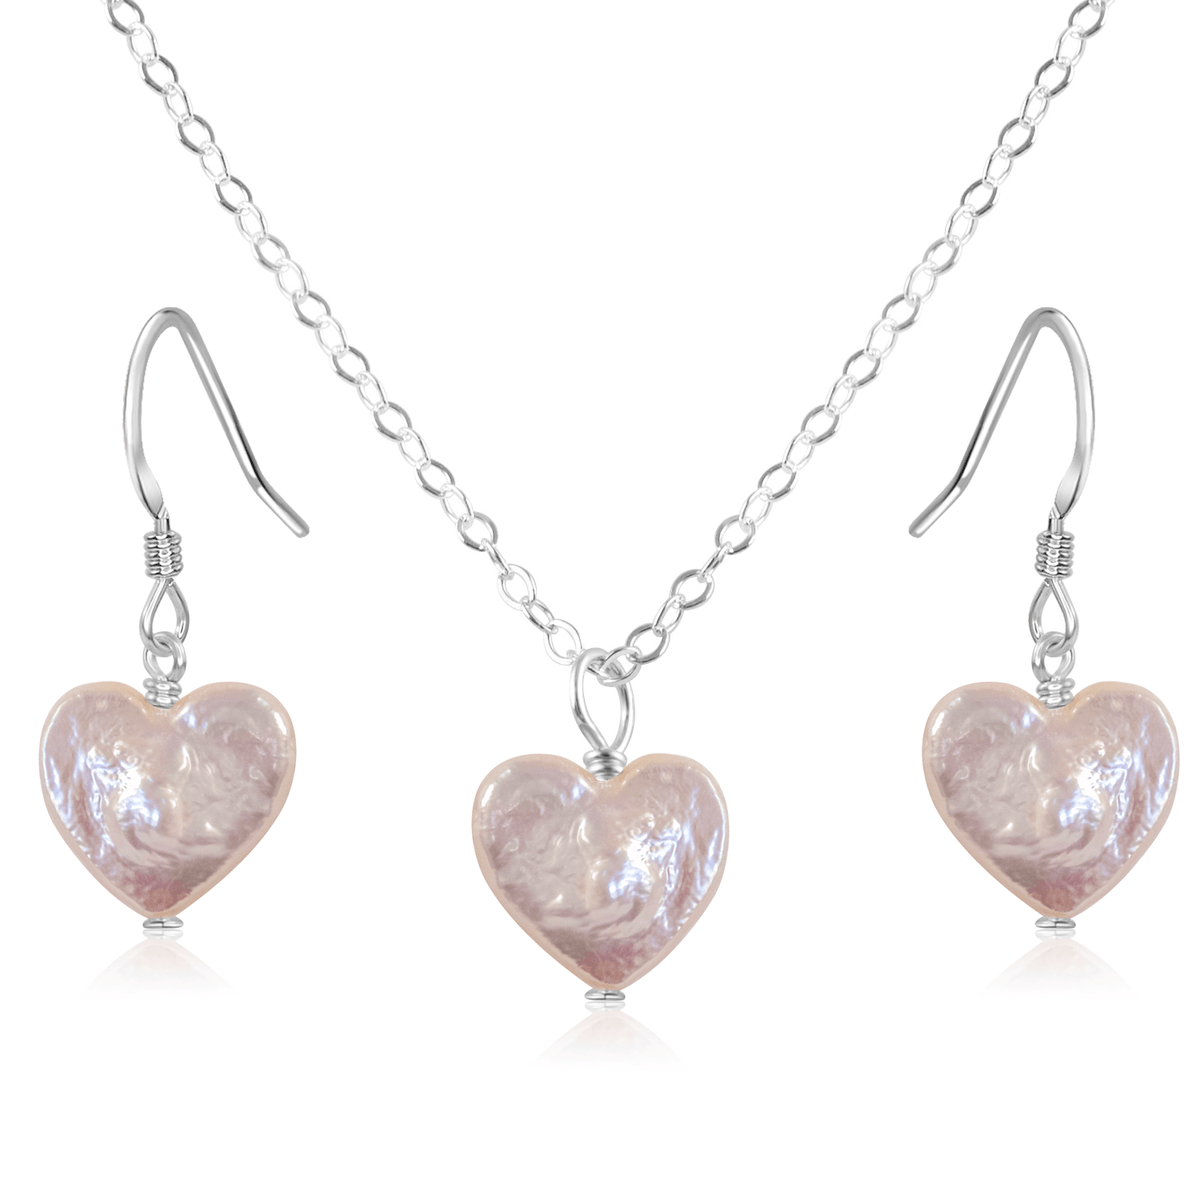 Freshwater Pearl Heart Jewellery Set - Freshwater Pearl Heart Jewellery Set - Sterling Silver / Cable / Necklace & Earrings - Luna Tide Handmade Crystal Jewellery